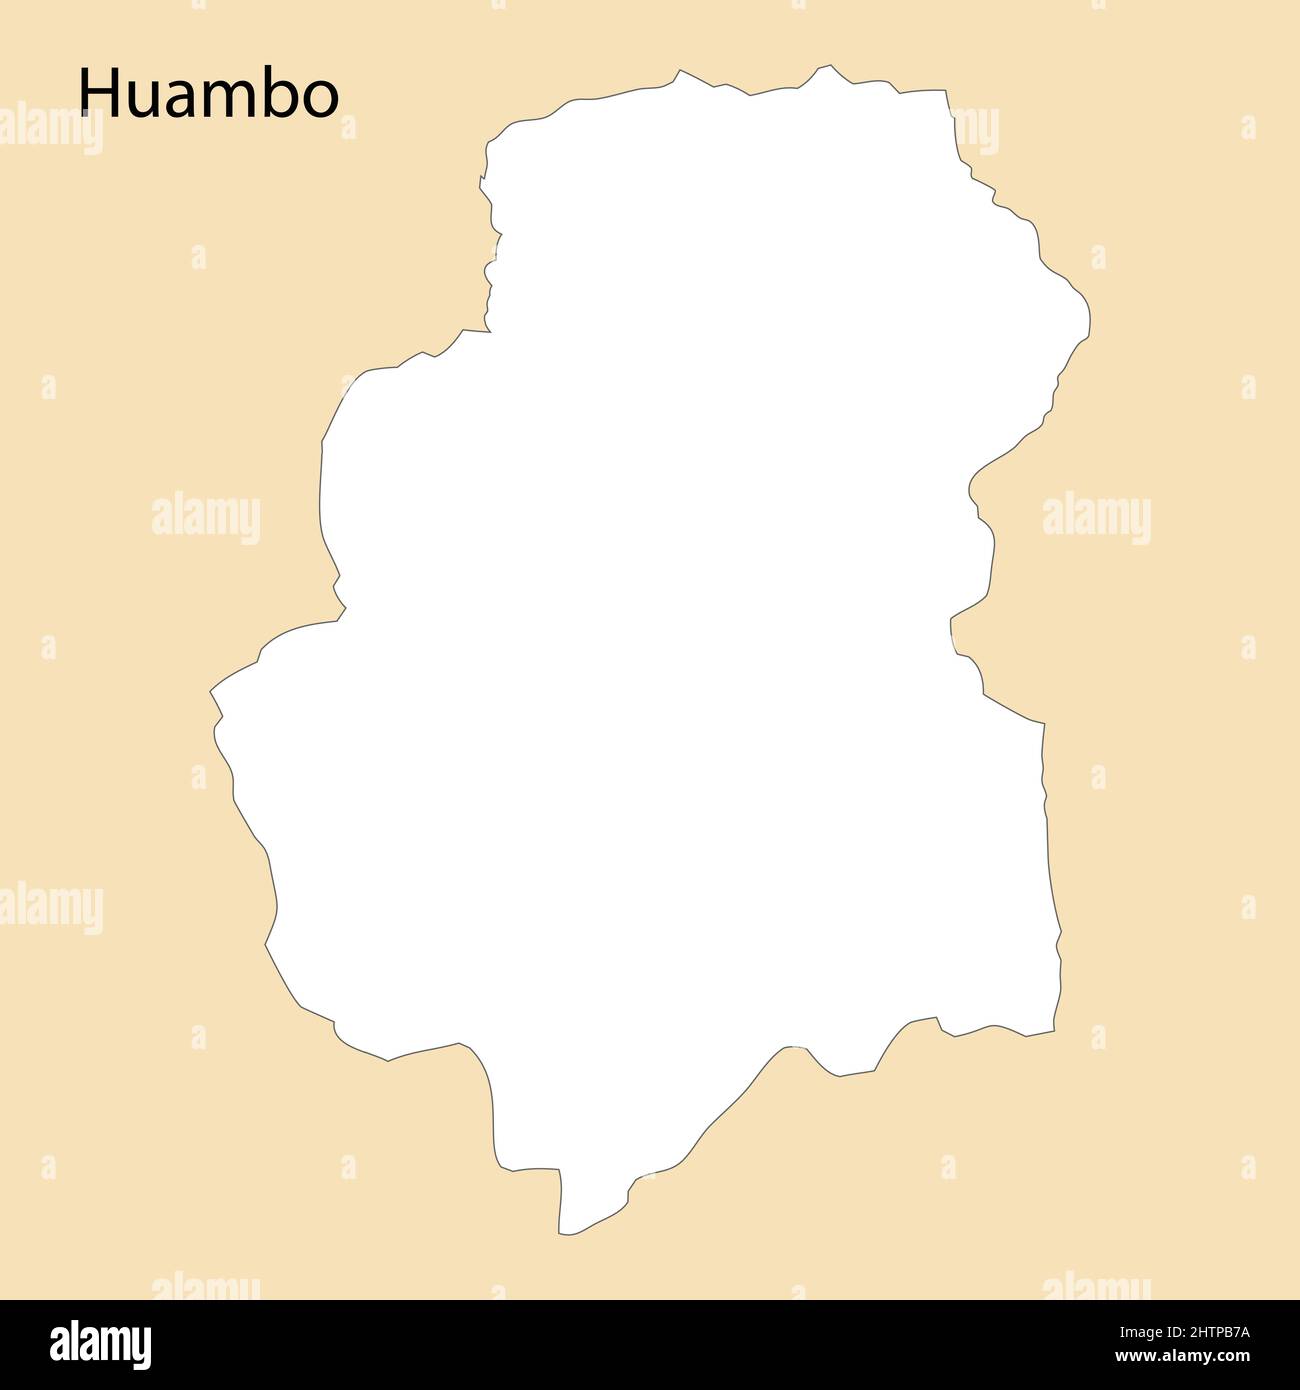 Huambo Province - Wikipedia